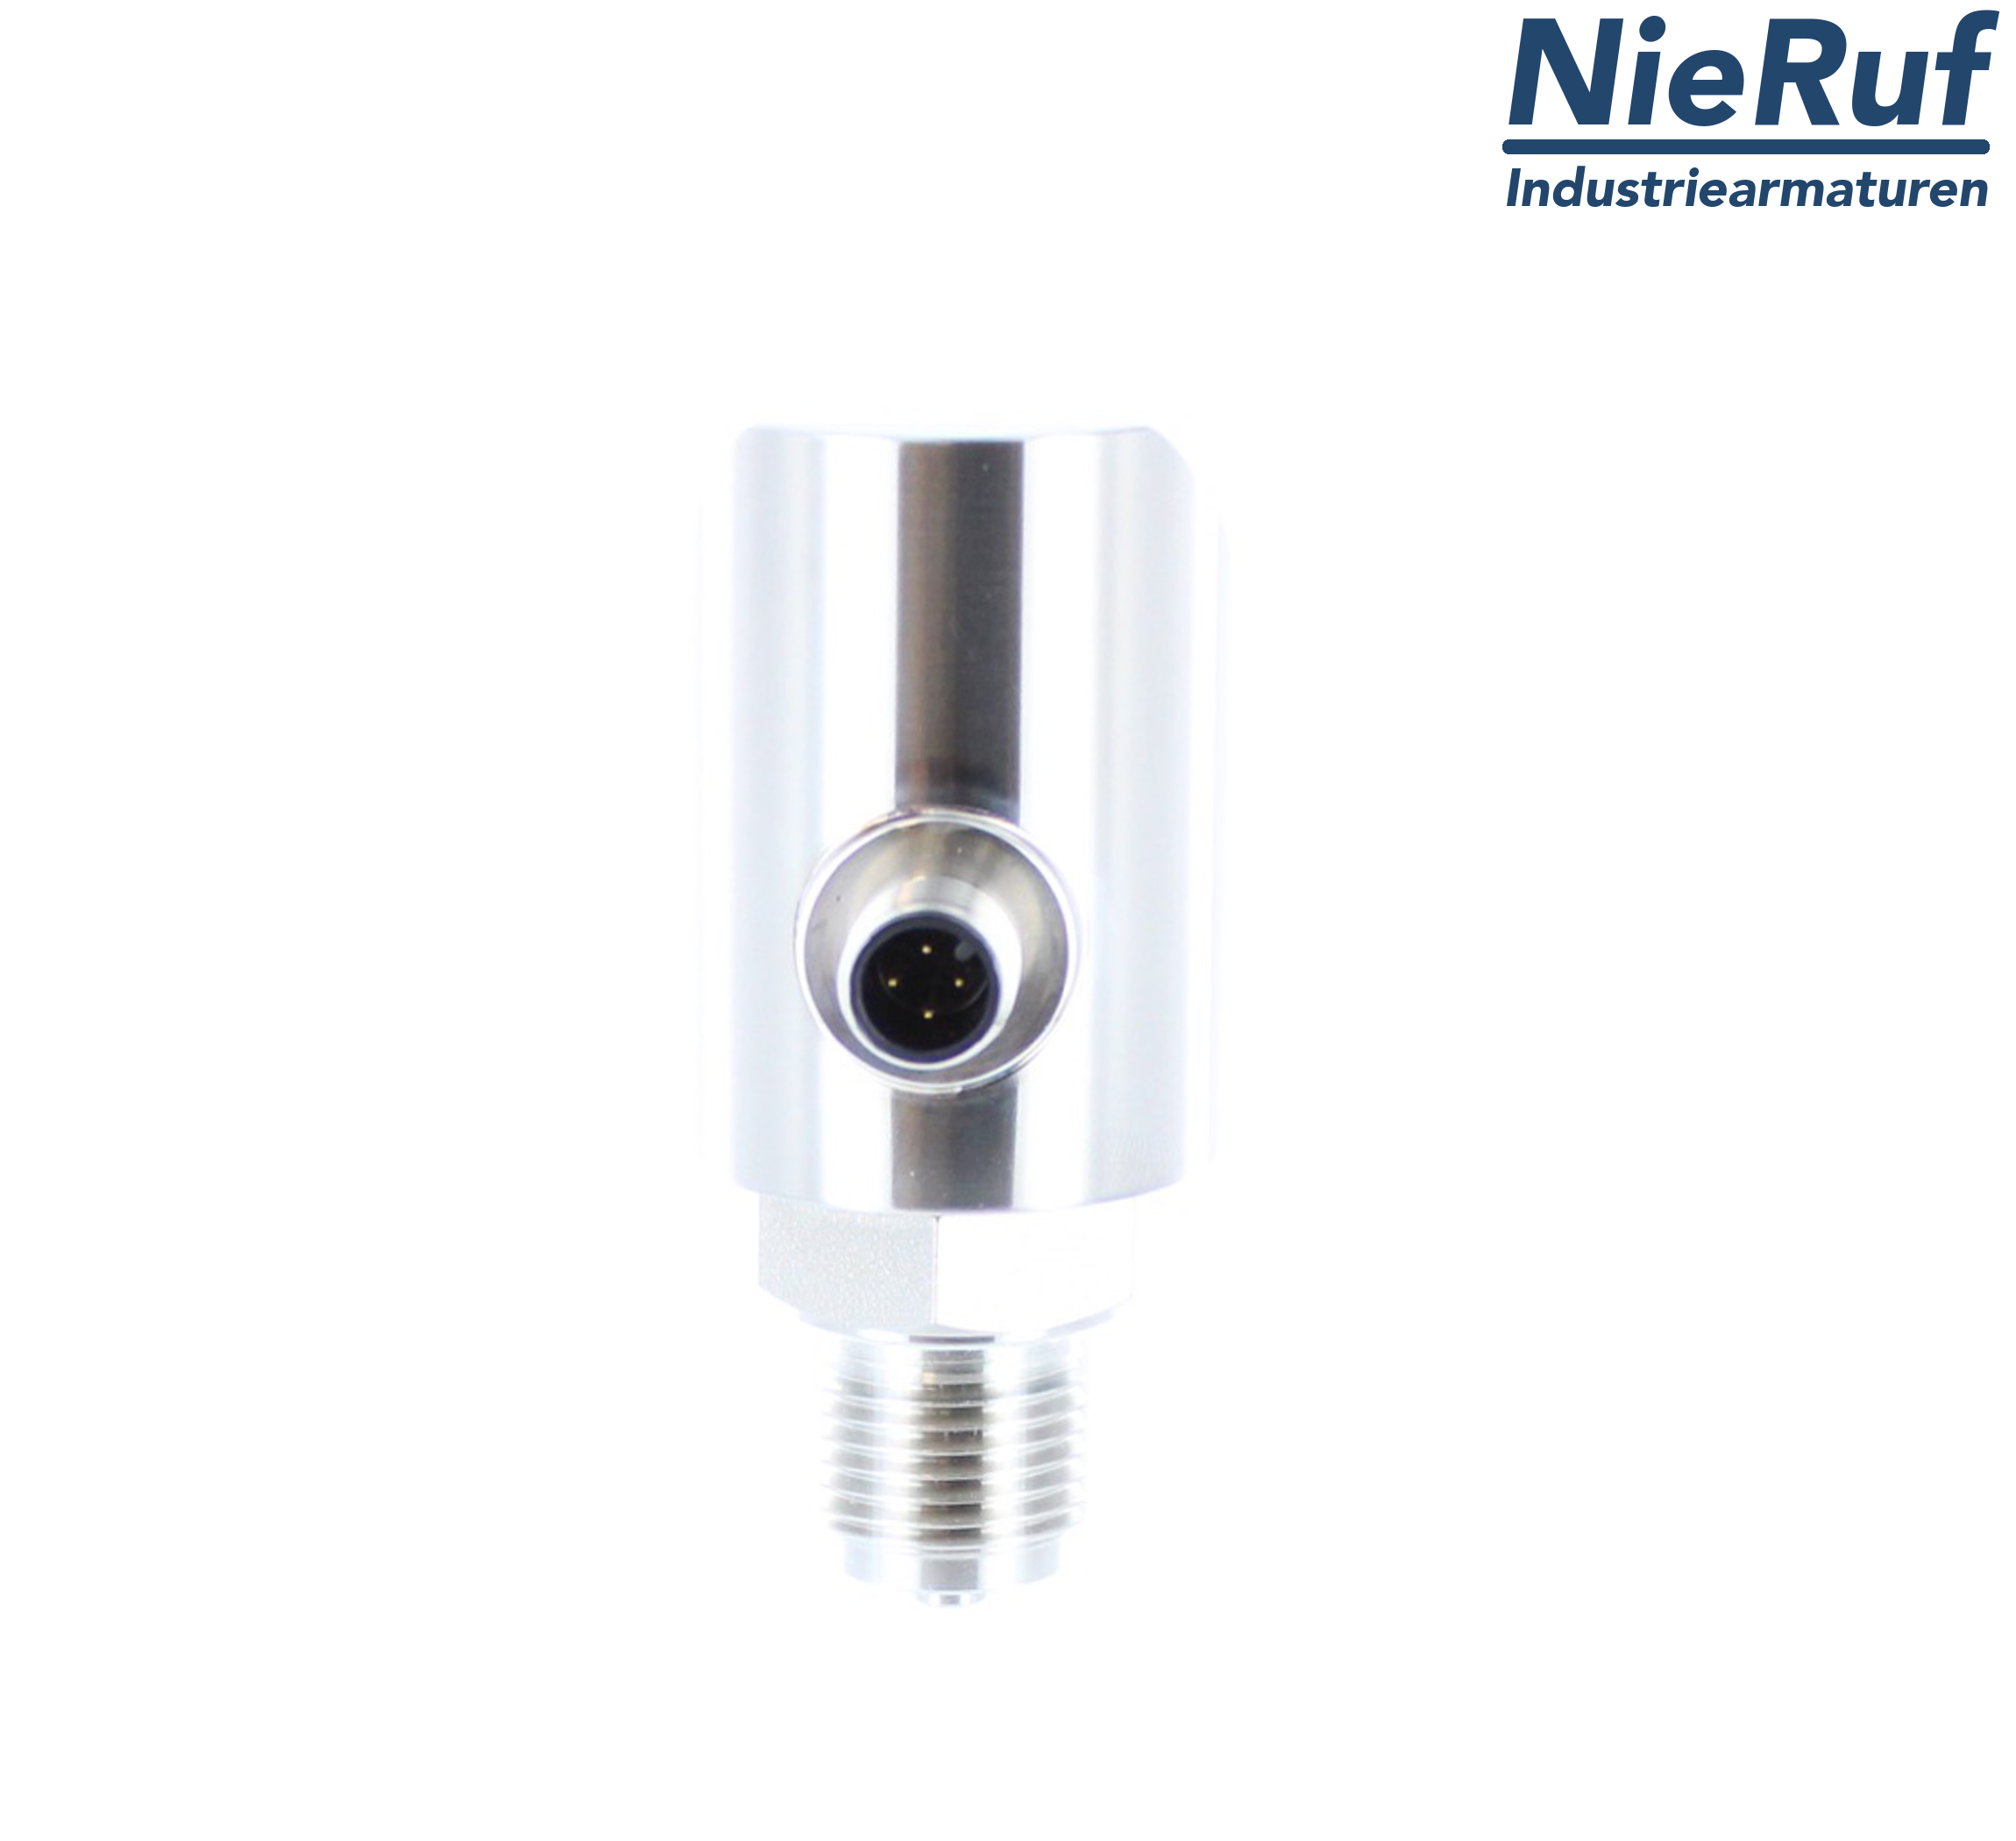 digital pressure sensor G 1/2" B IB 4-wire: 1xPNP, 1x4 - 20mA FPM 0,0 - 10,0 bar